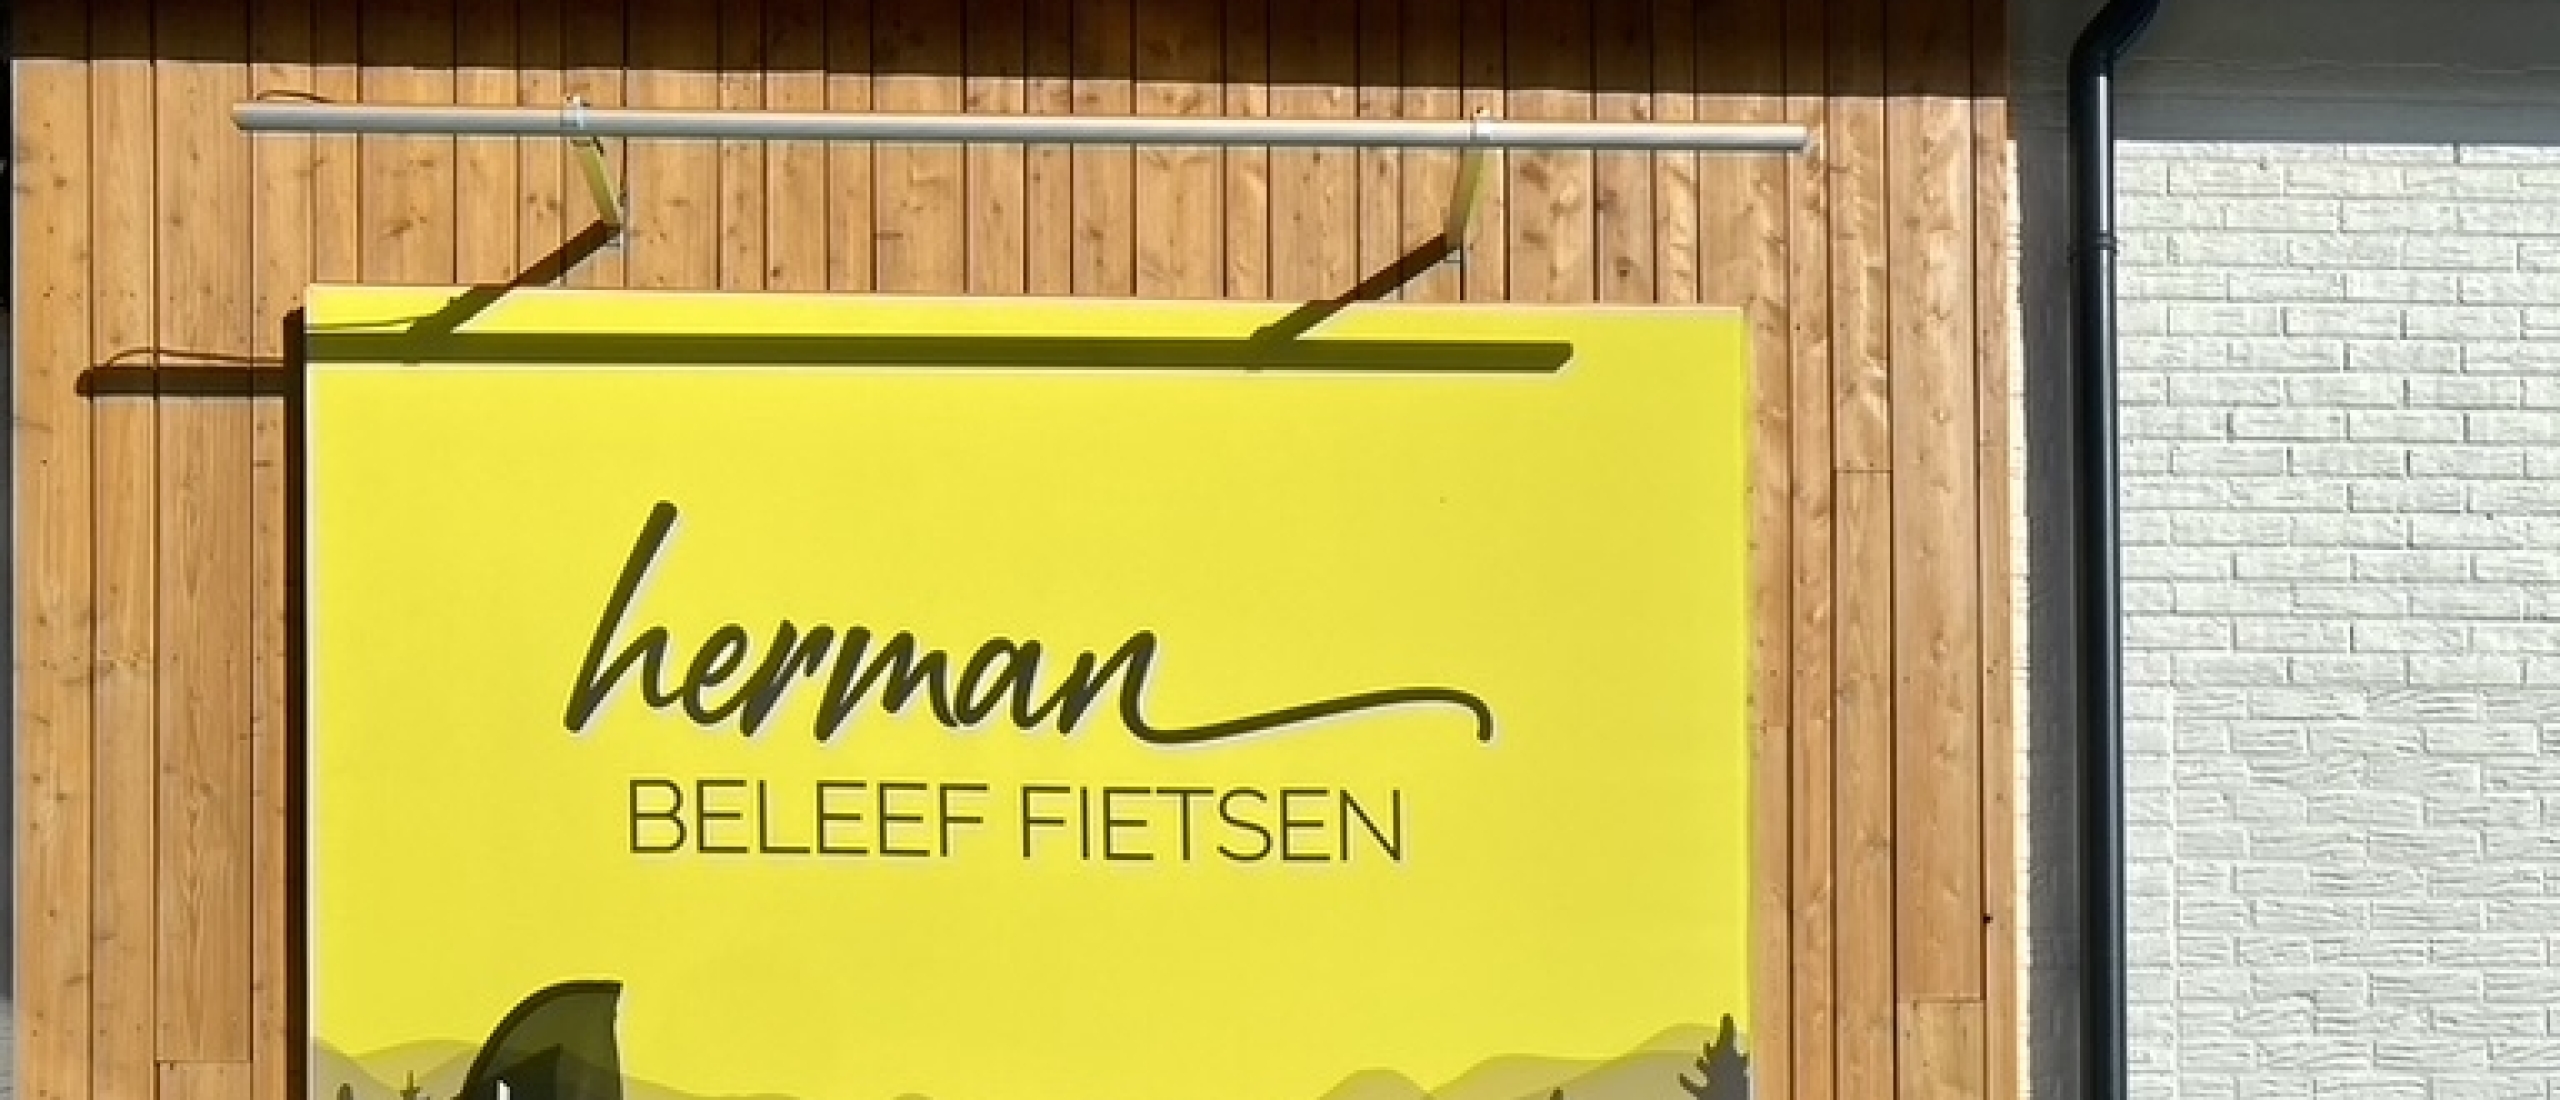 Herman Beleef Fietsen x Fietsvrouwen